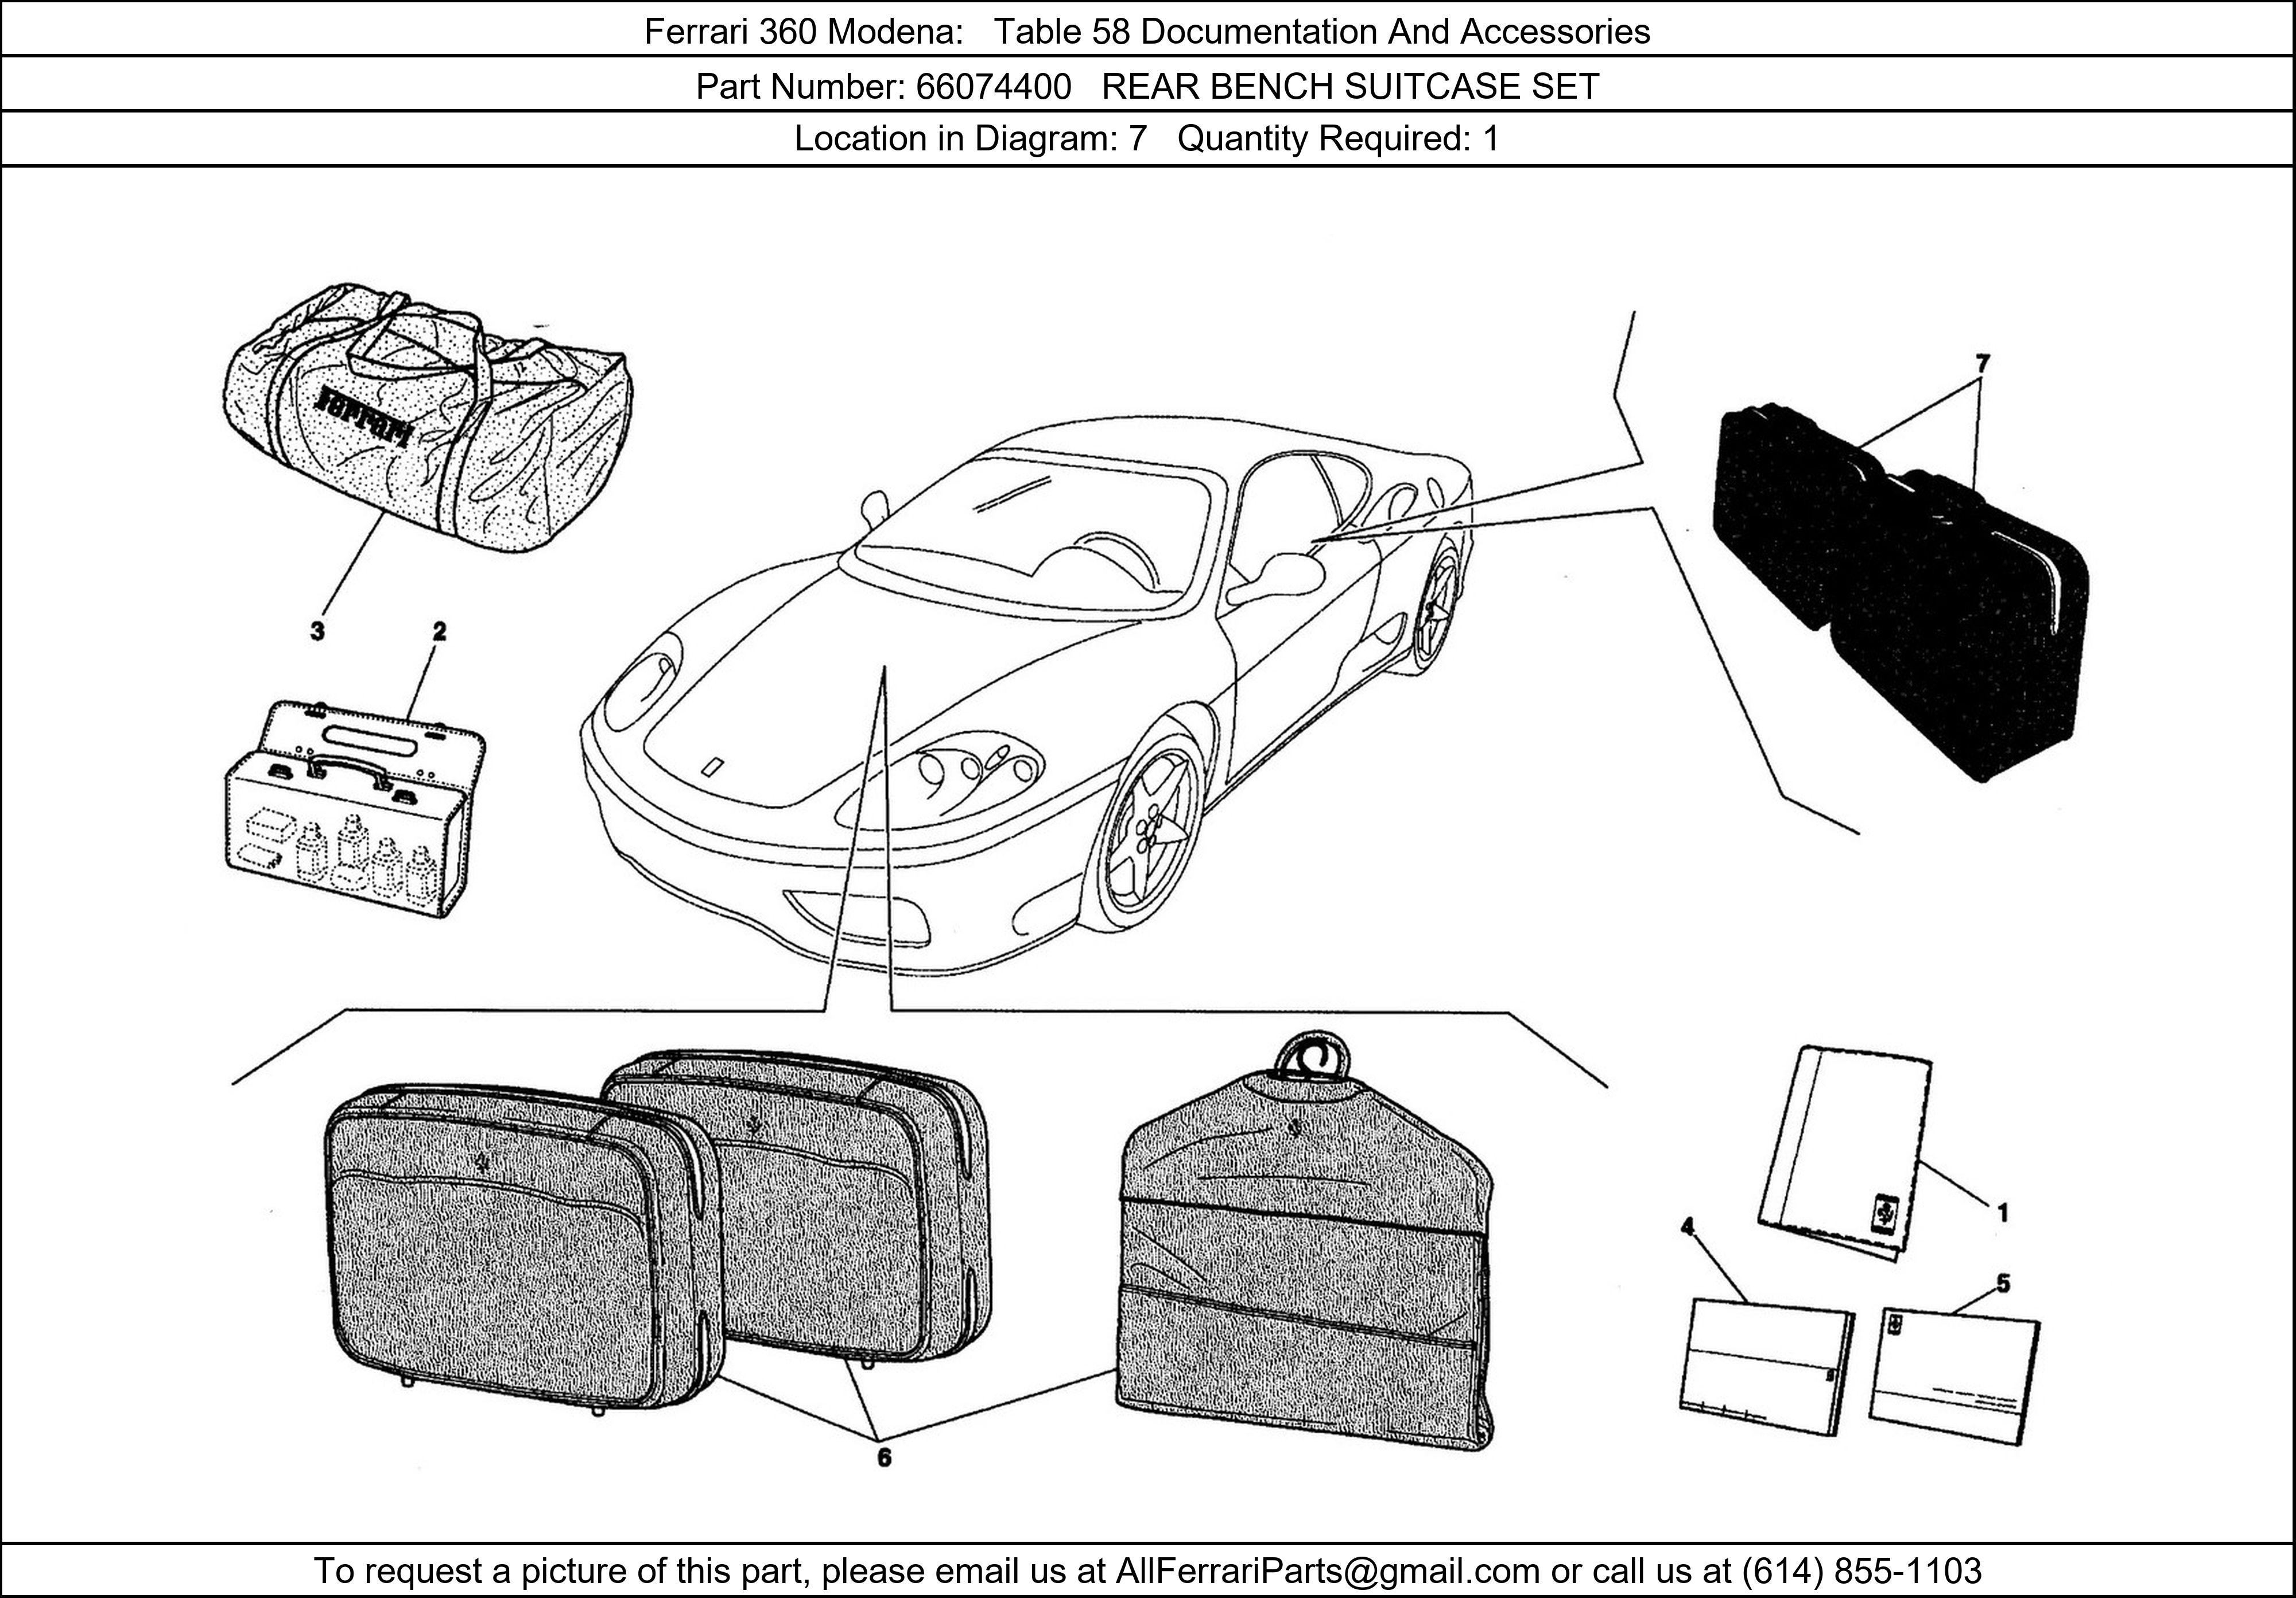 Ferrari Part 66074400